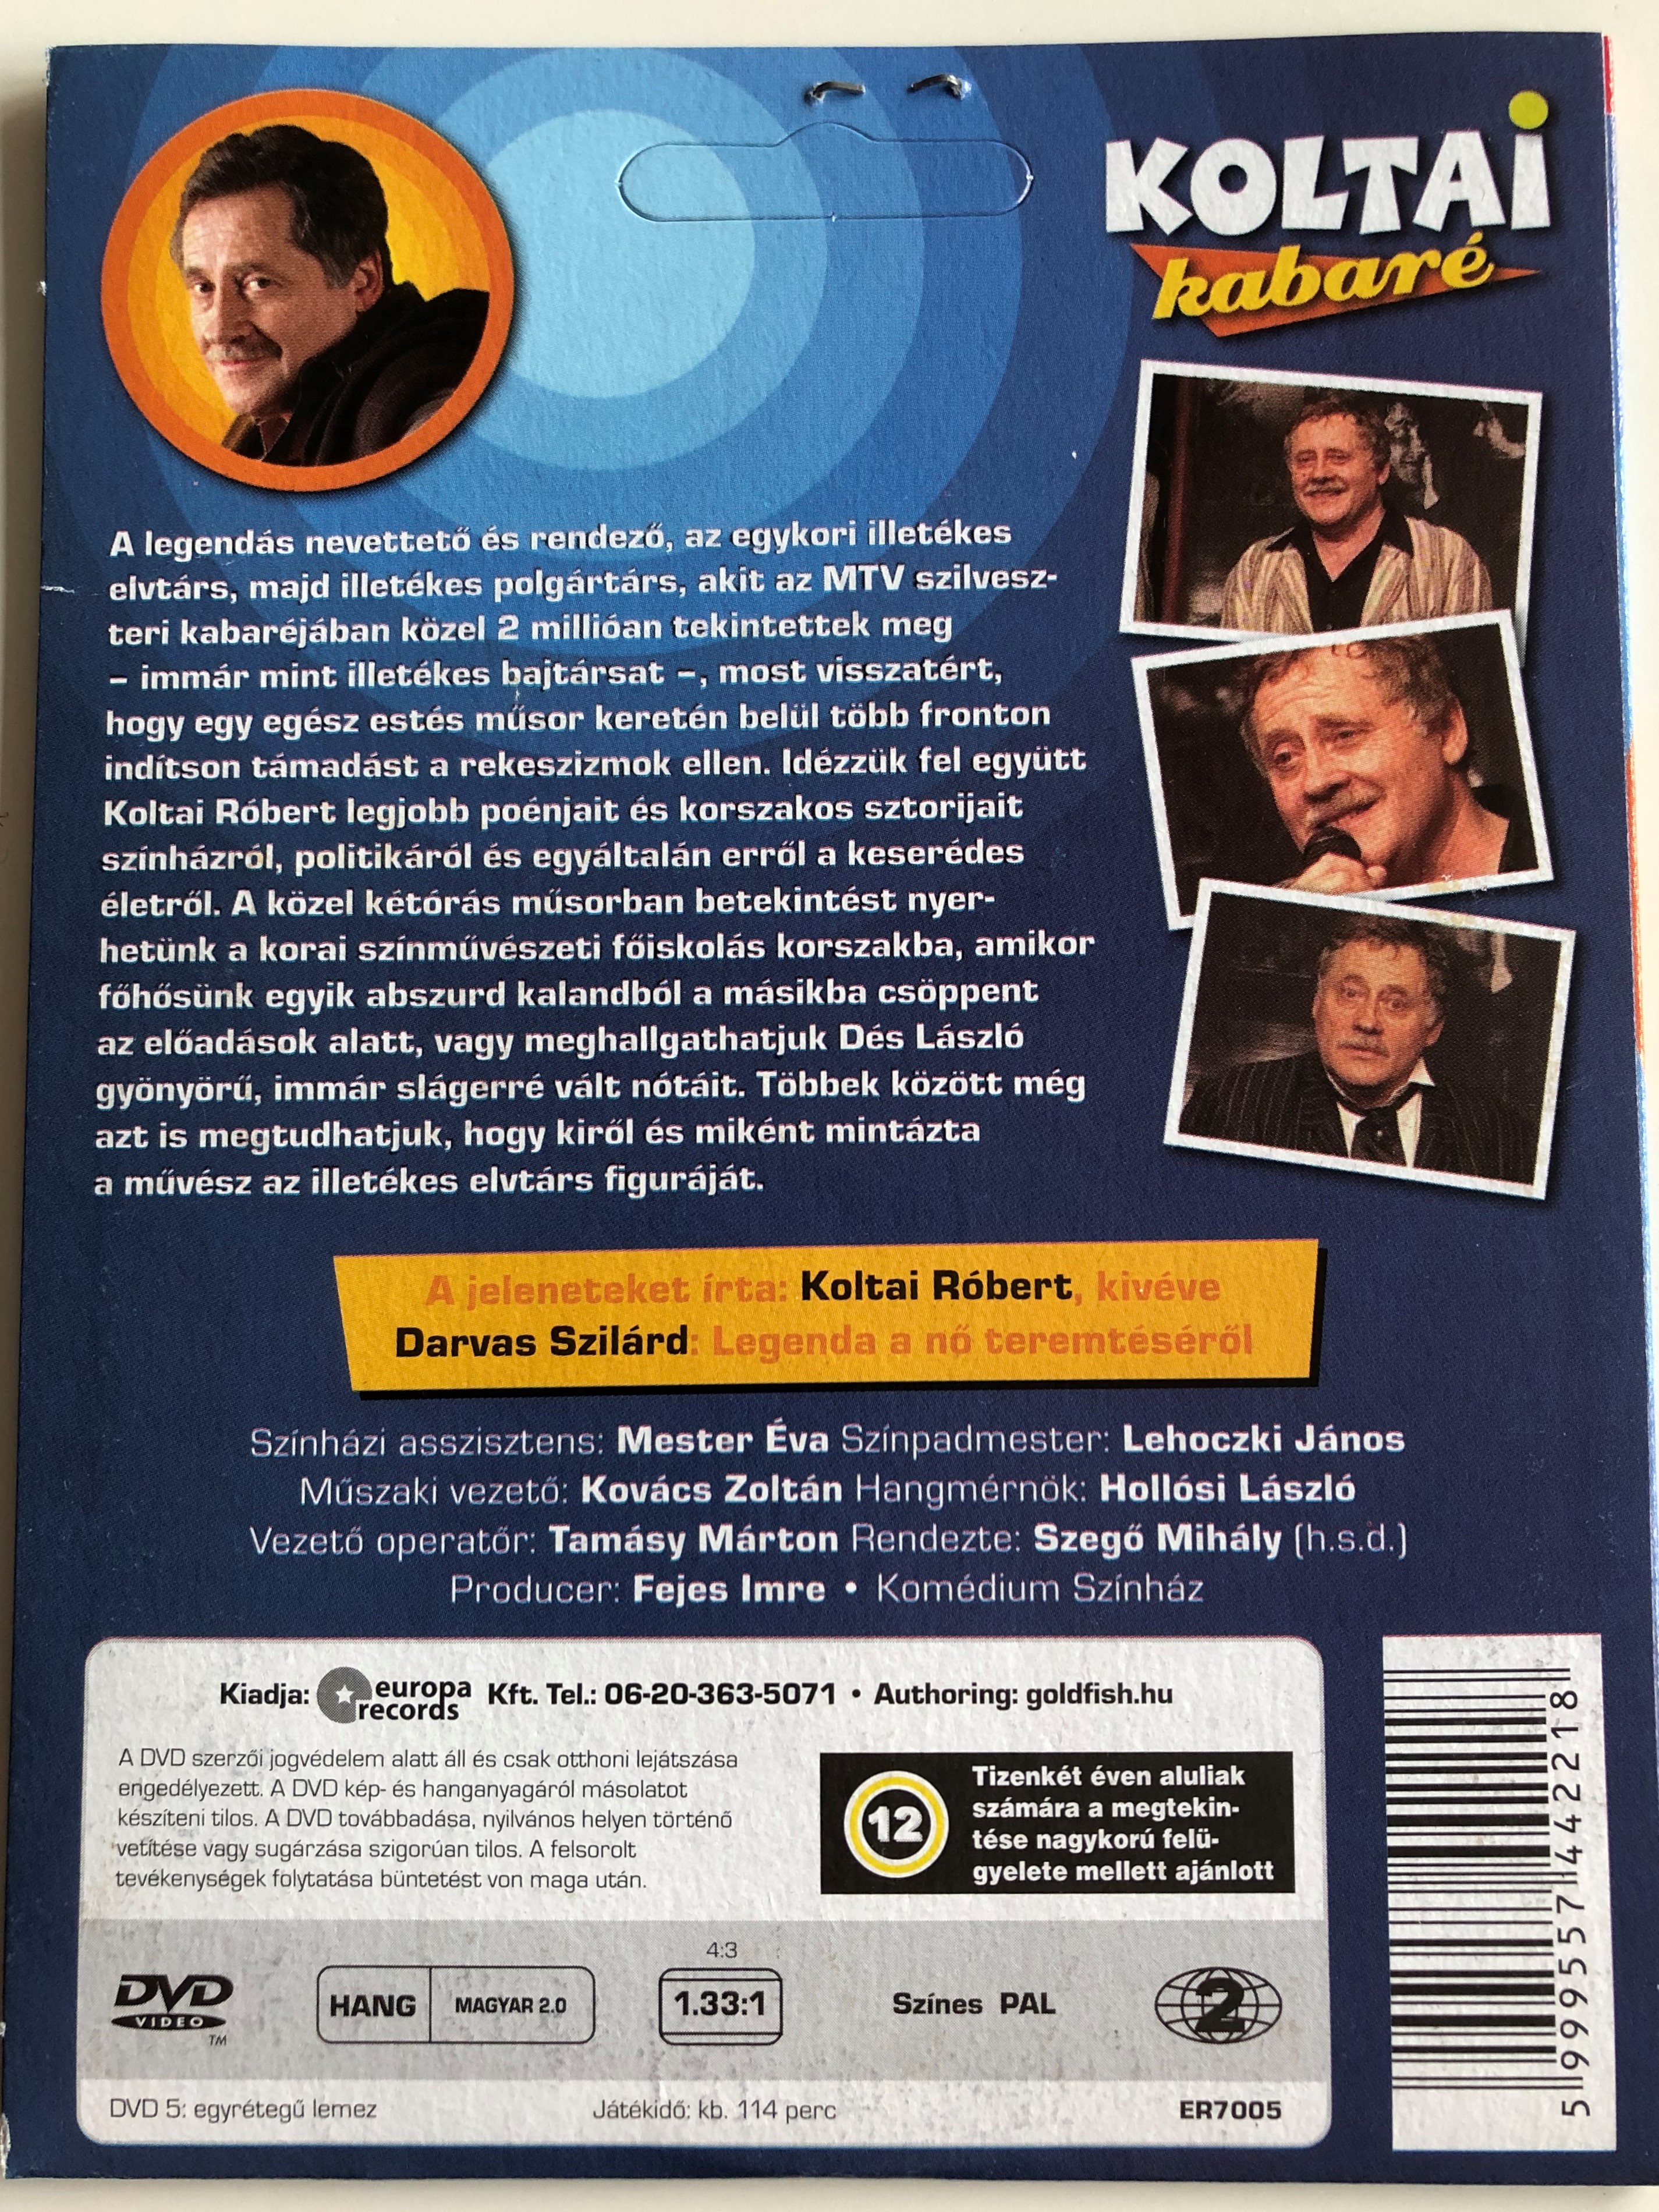 Koltai Cabaret - Koltai kabaré DVD 2007 1.JPG